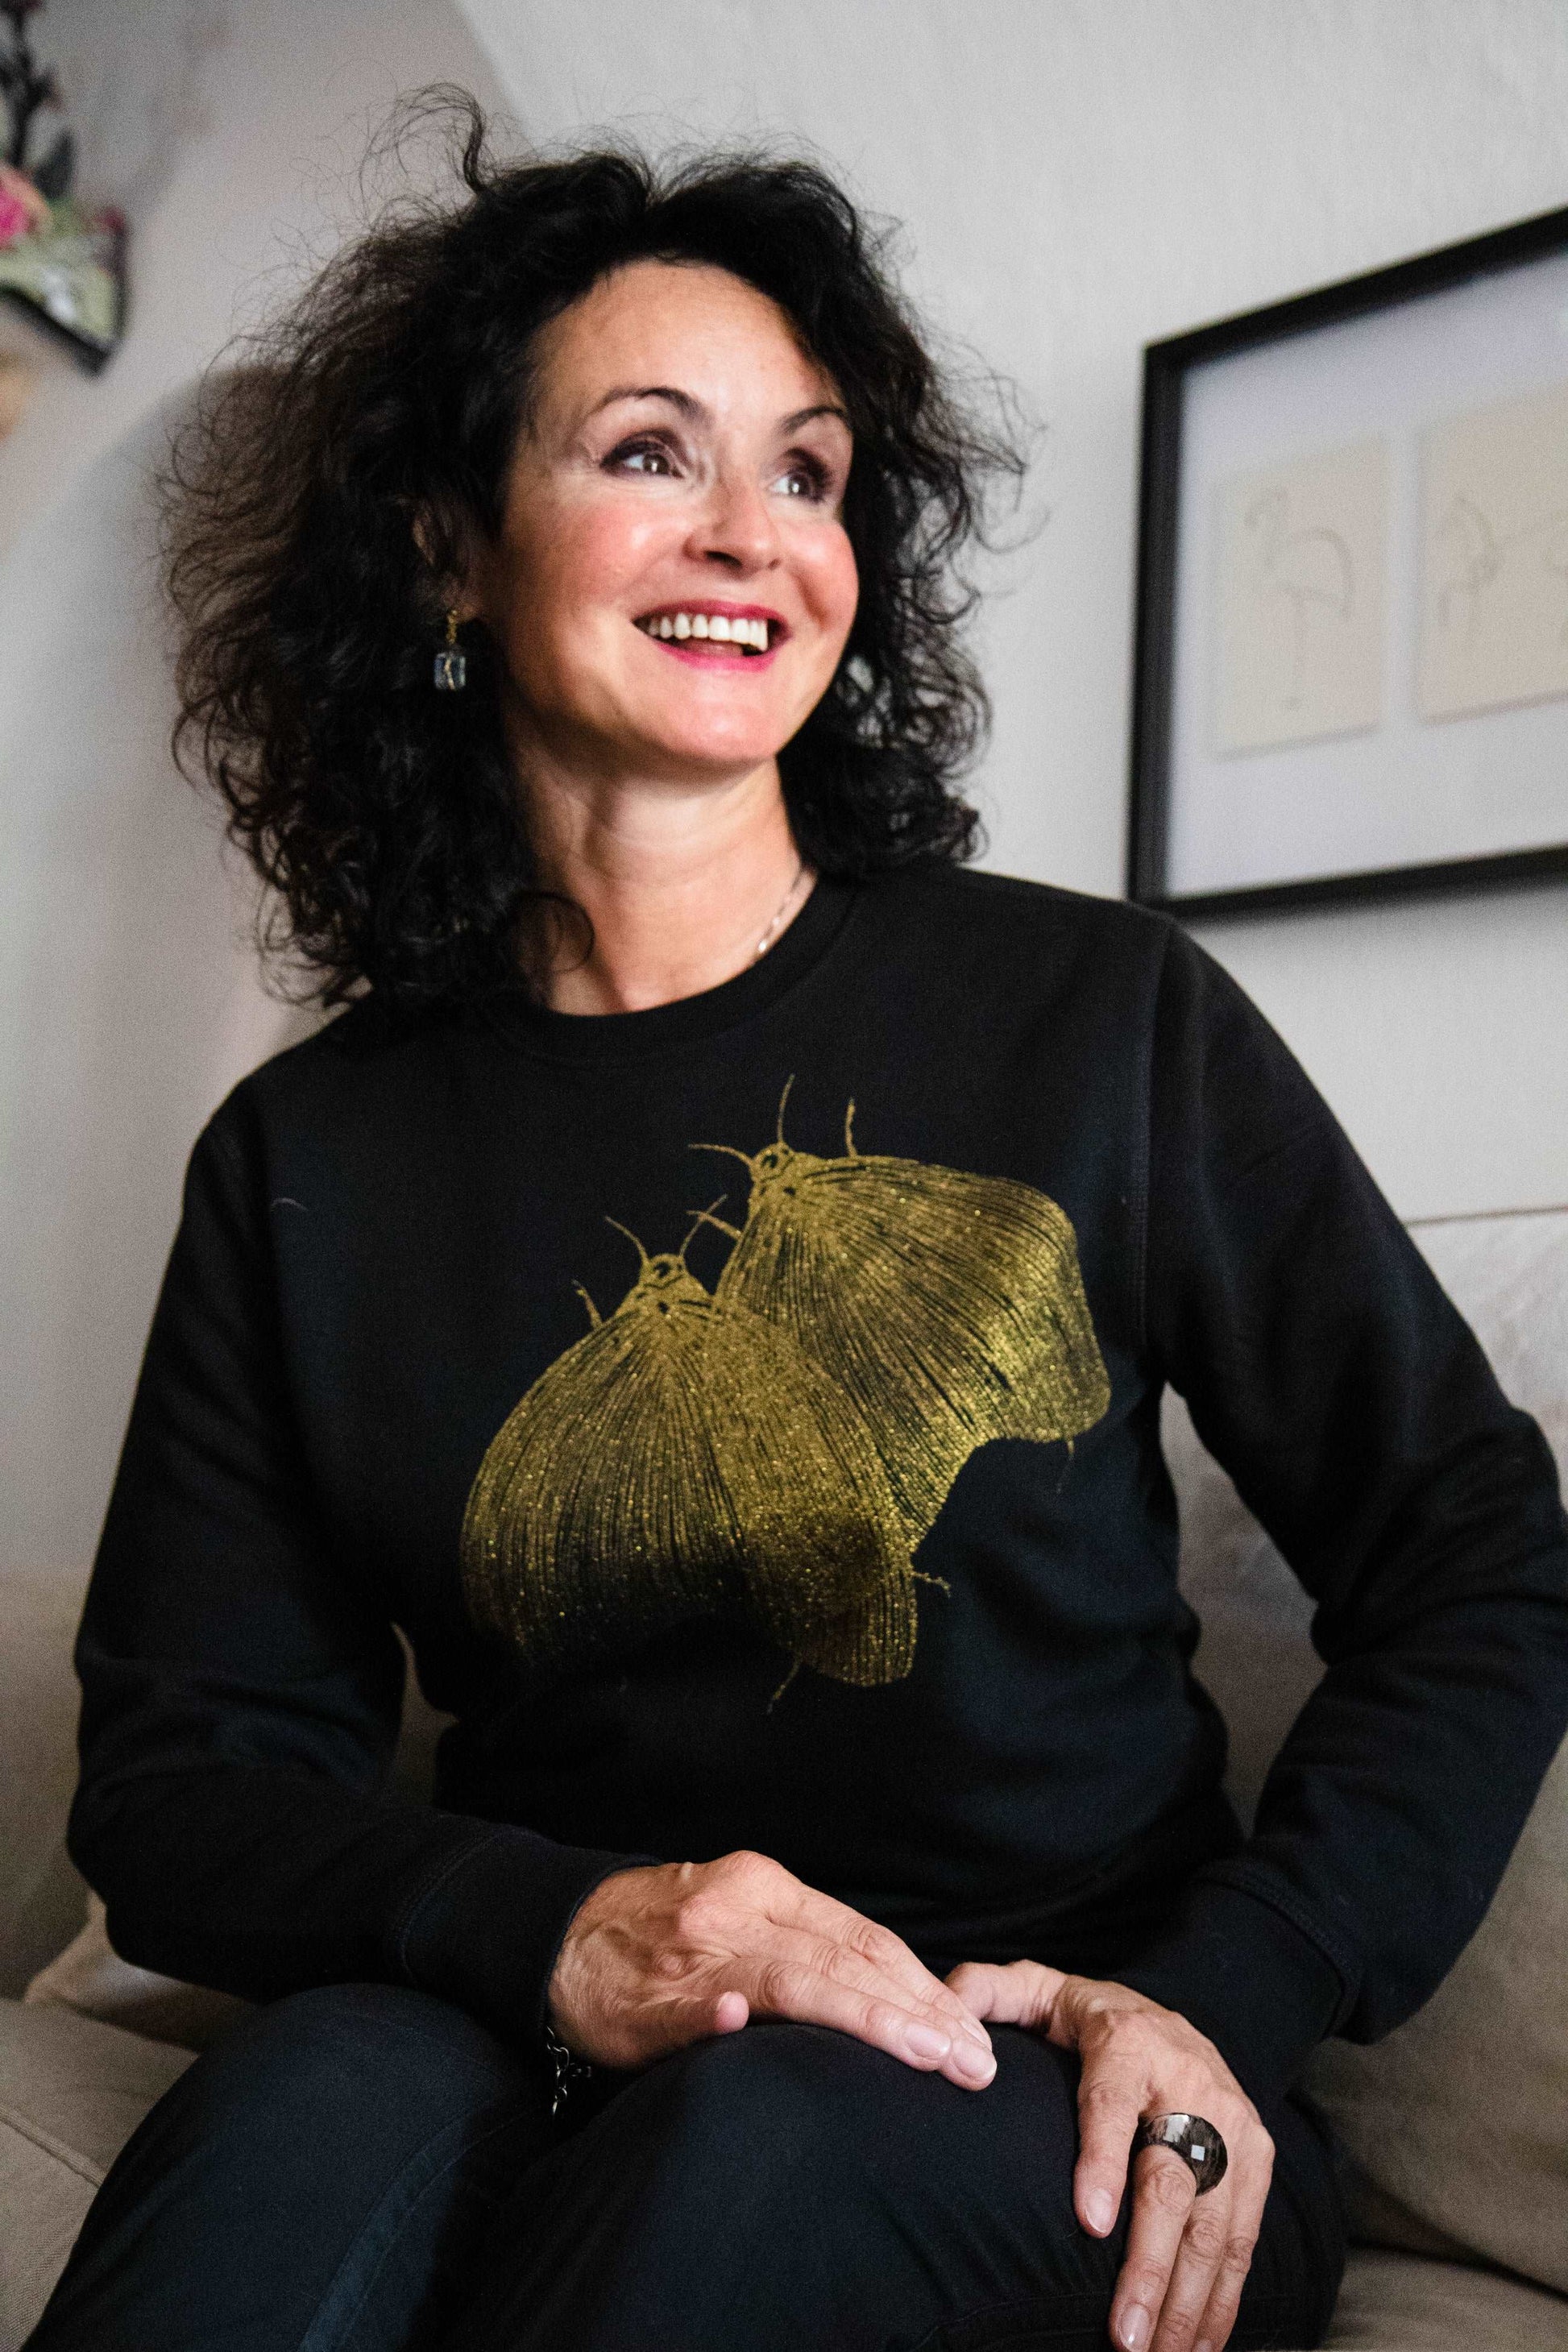 Črn pulover in nočni metulji v bleščično zlati barvi - 300 g organski bombaž